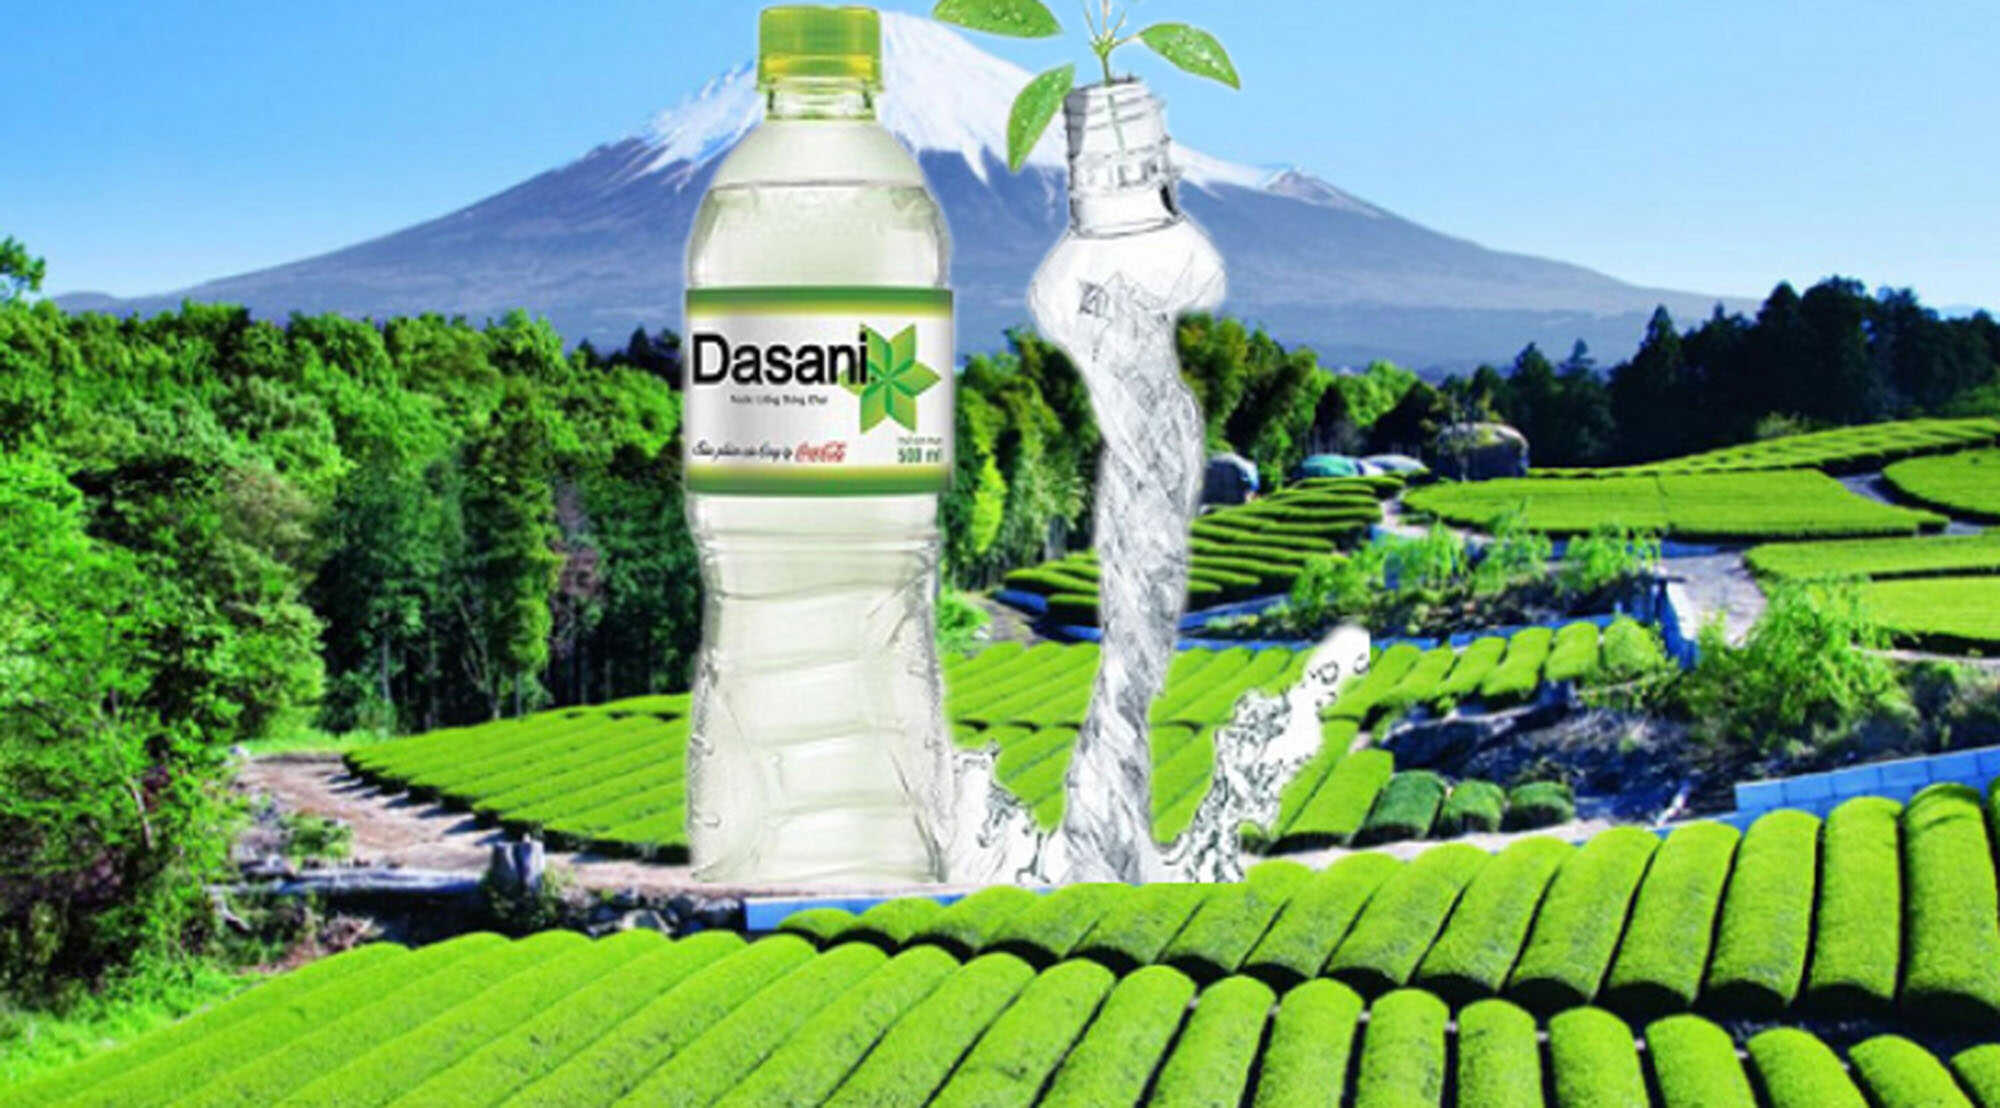 NƯỚC LỌC DASANI – Nước suối Dasani giá sỉ đại lý giao nhanh